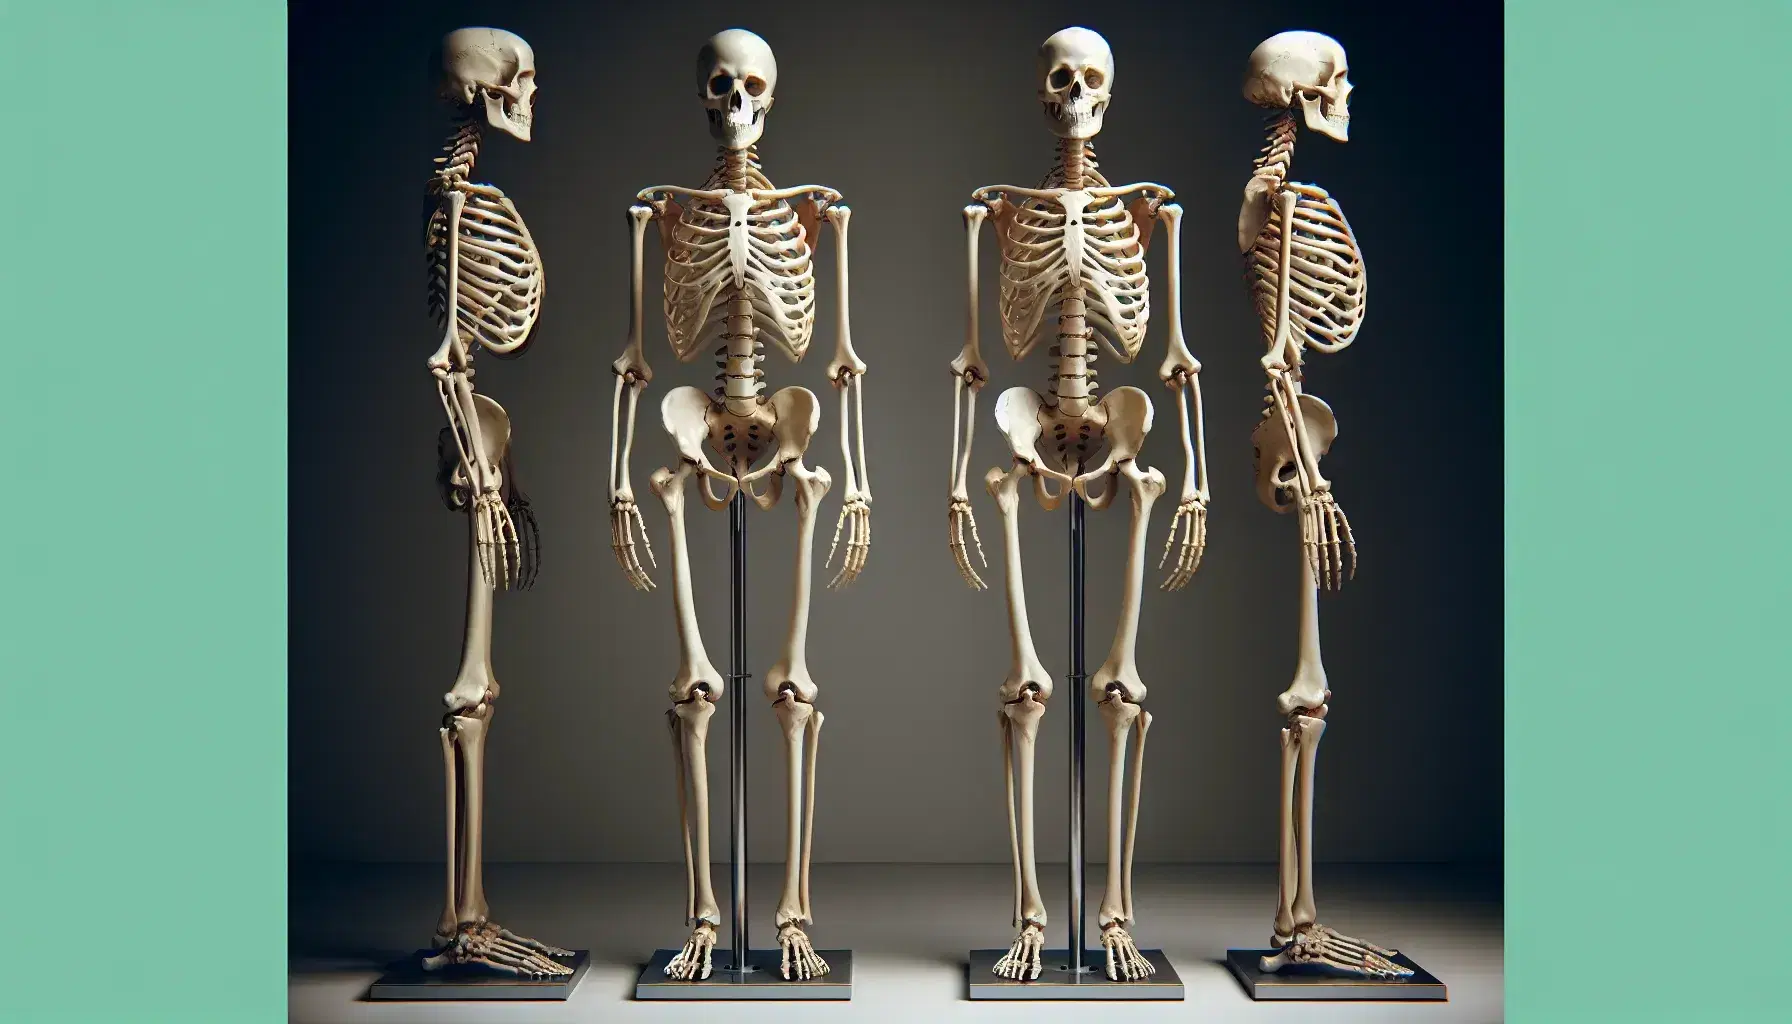 Esqueleto humano completo montado verticalmente en soporte metálico, con brazos extendidos y palmas hacia adelante, mostrando la estructura ósea detallada y articulaciones visibles.